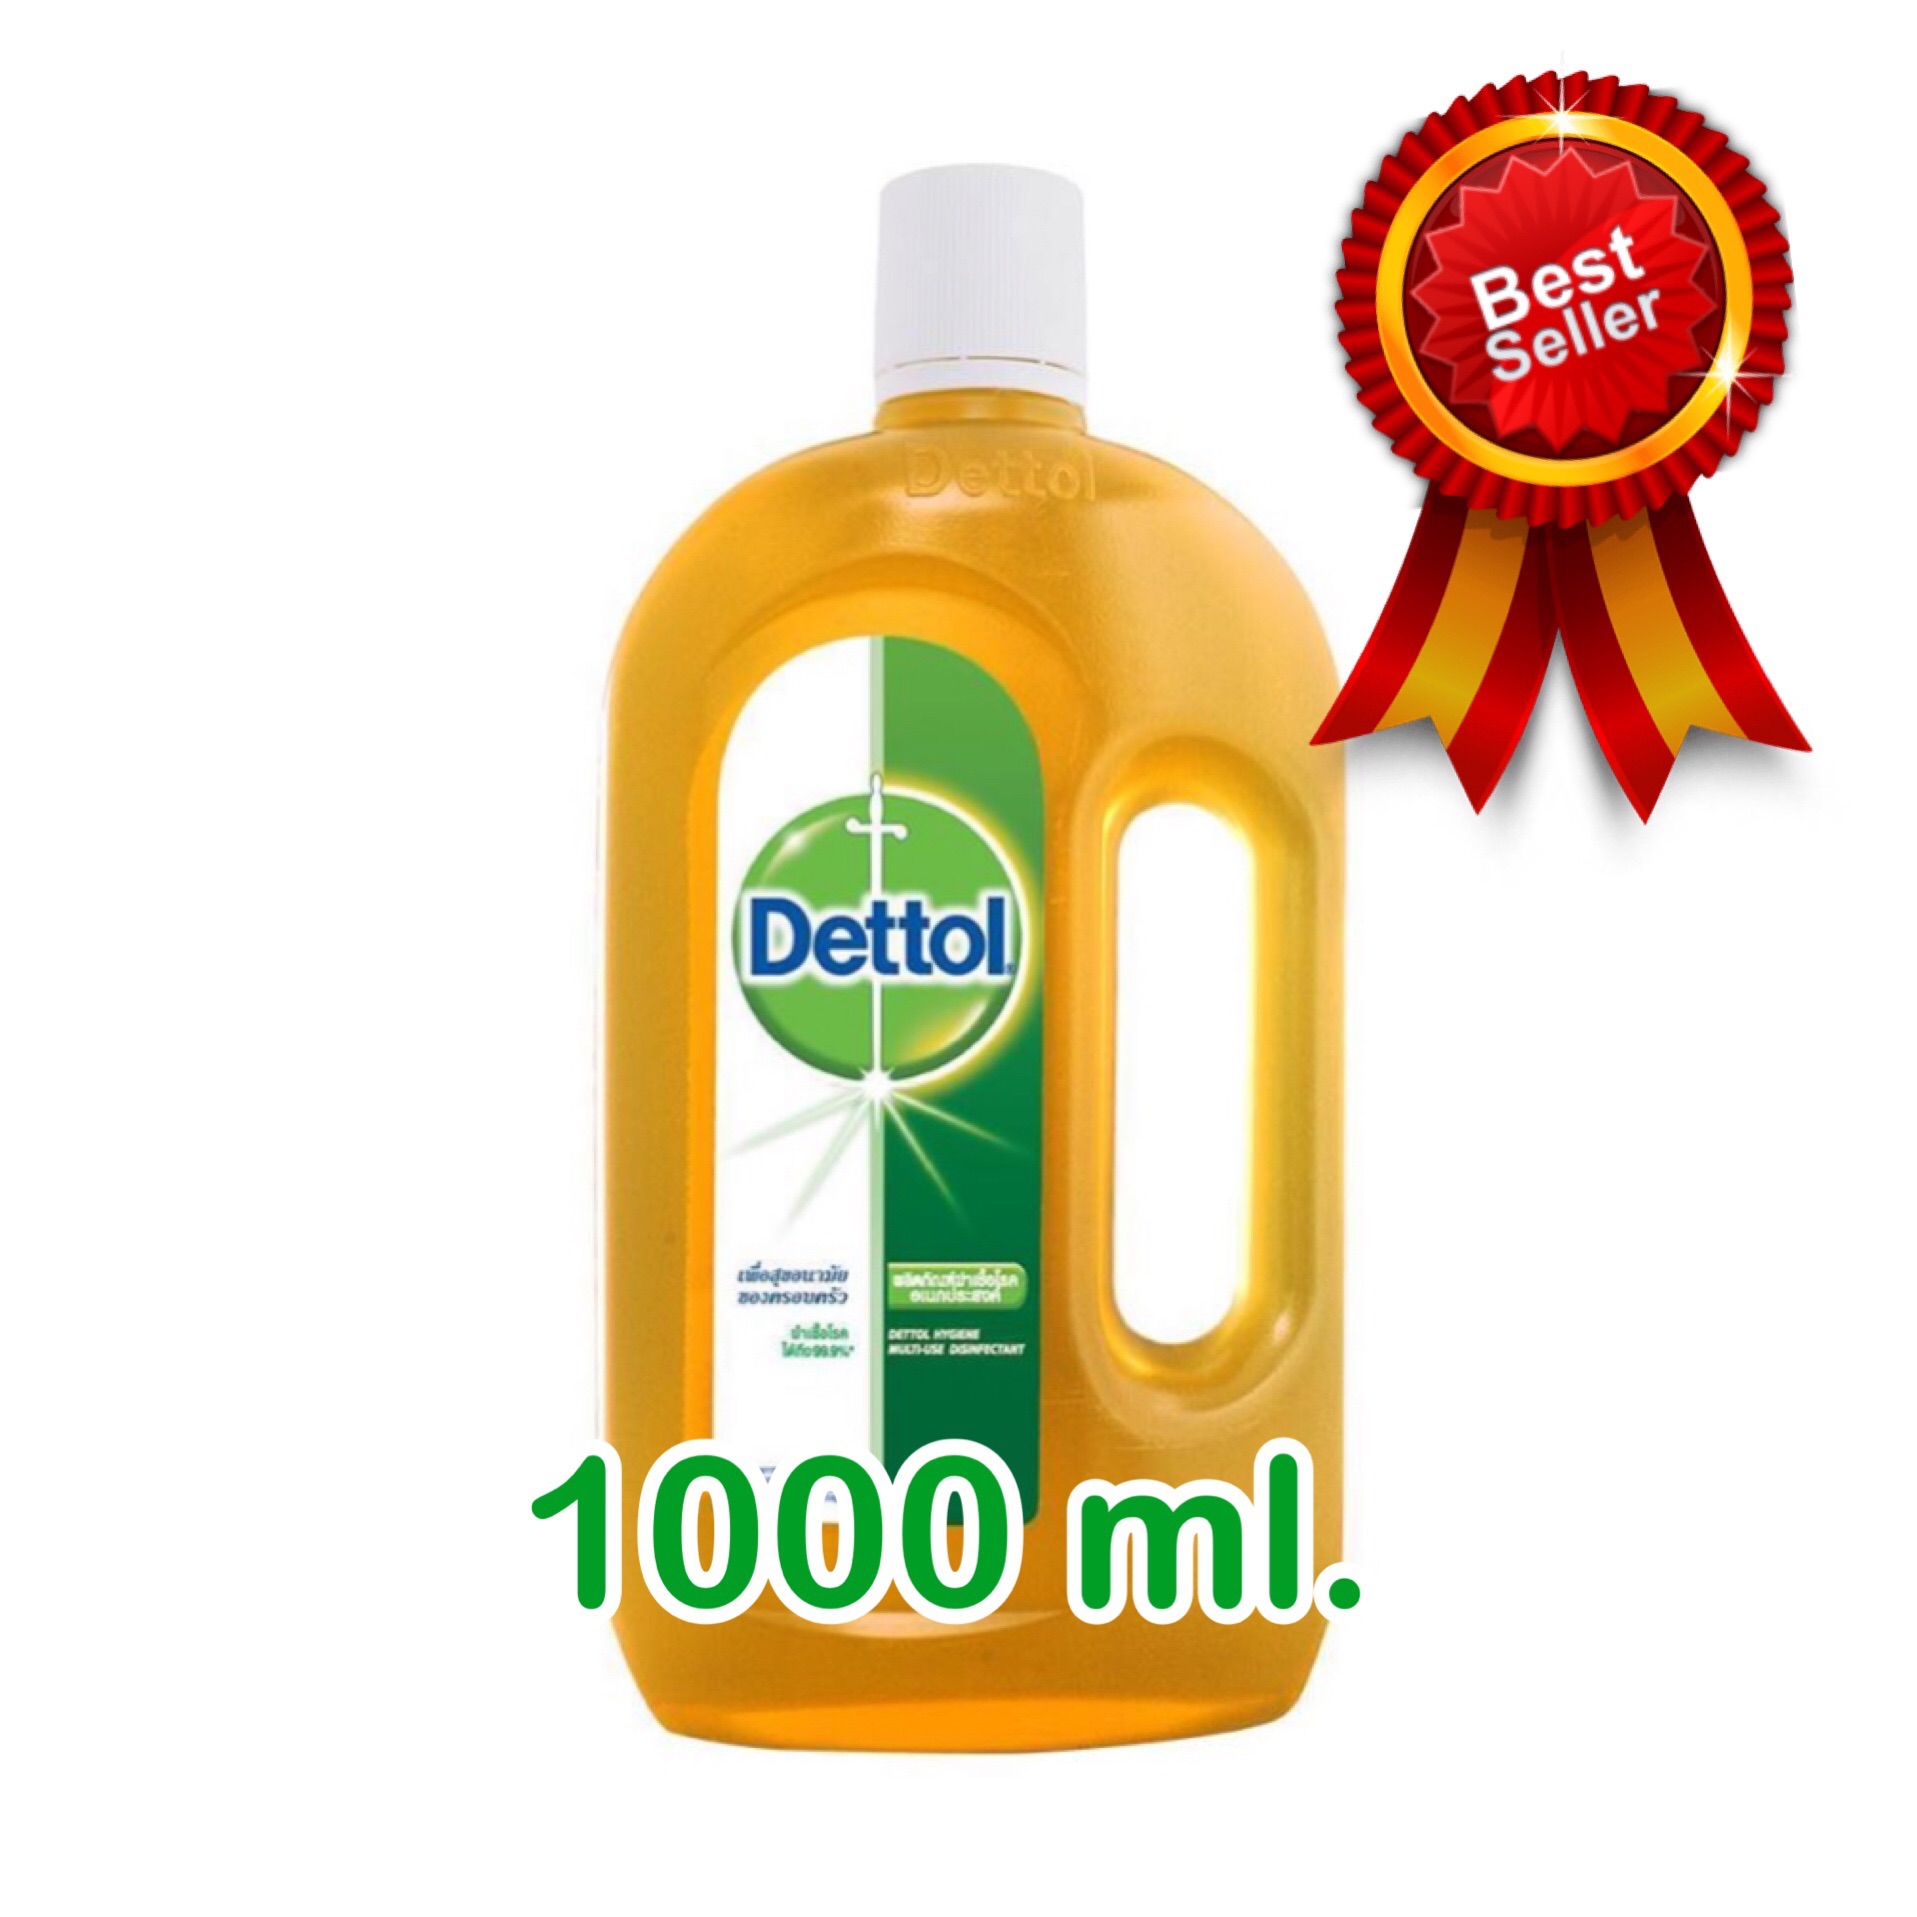 ลดพิเศษ !! เดทตอล ผลิตภัณฑ์ฆ่าเชื้อโรค 1000 มล. Dettol hygiene munti-use 1000 ml.